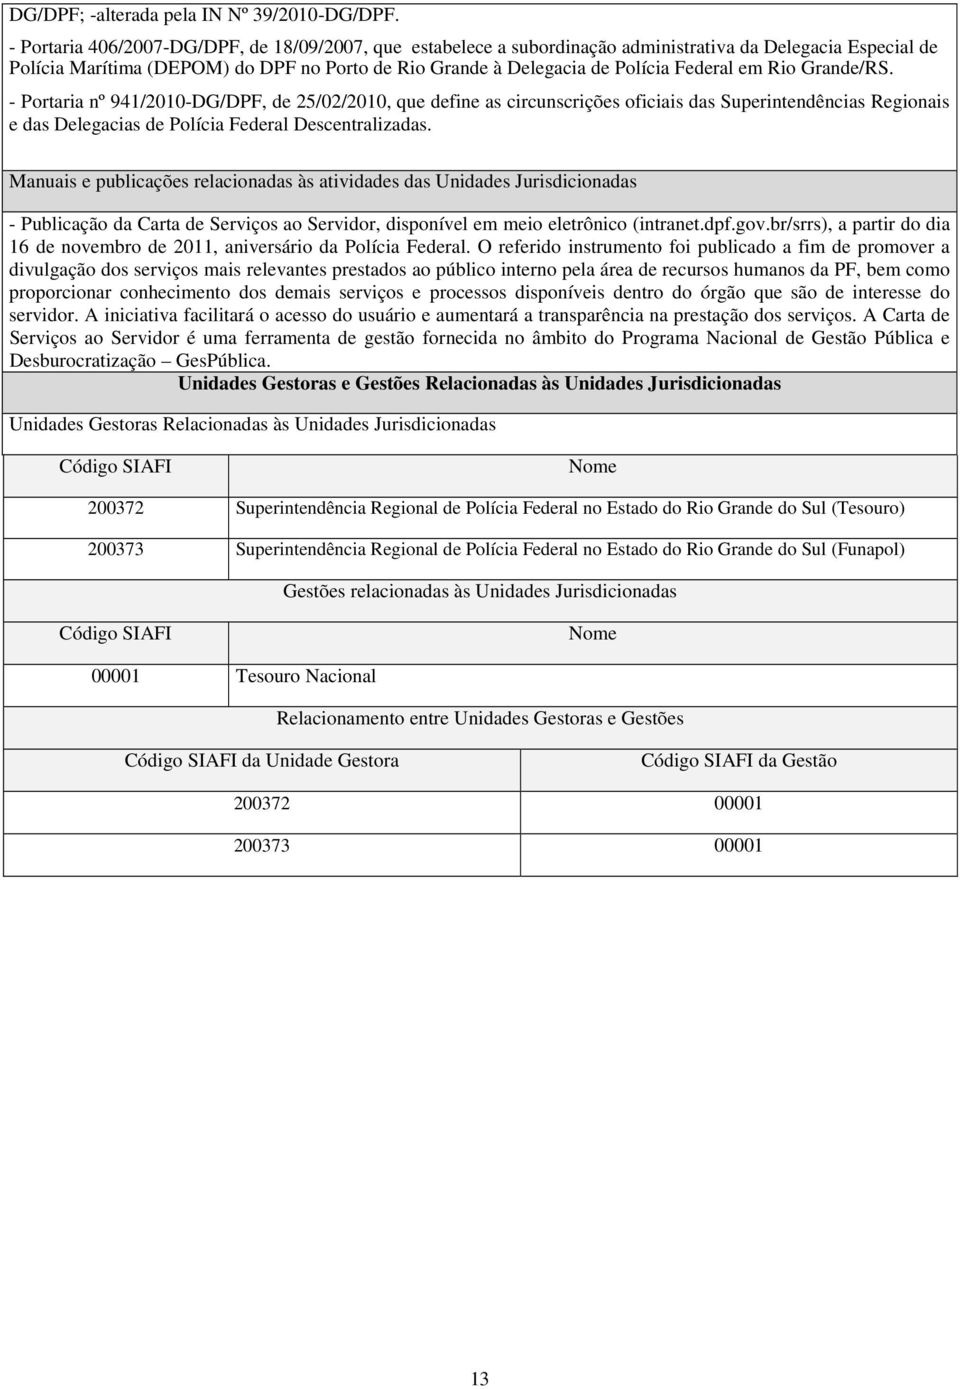 em Rio Grande/RS. - Portaria nº 941/2010-DG/DPF, de 25/02/2010, que define as circunscrições oficiais das Superintendências Regionais e das Delegacias de Polícia Federal Descentralizadas.